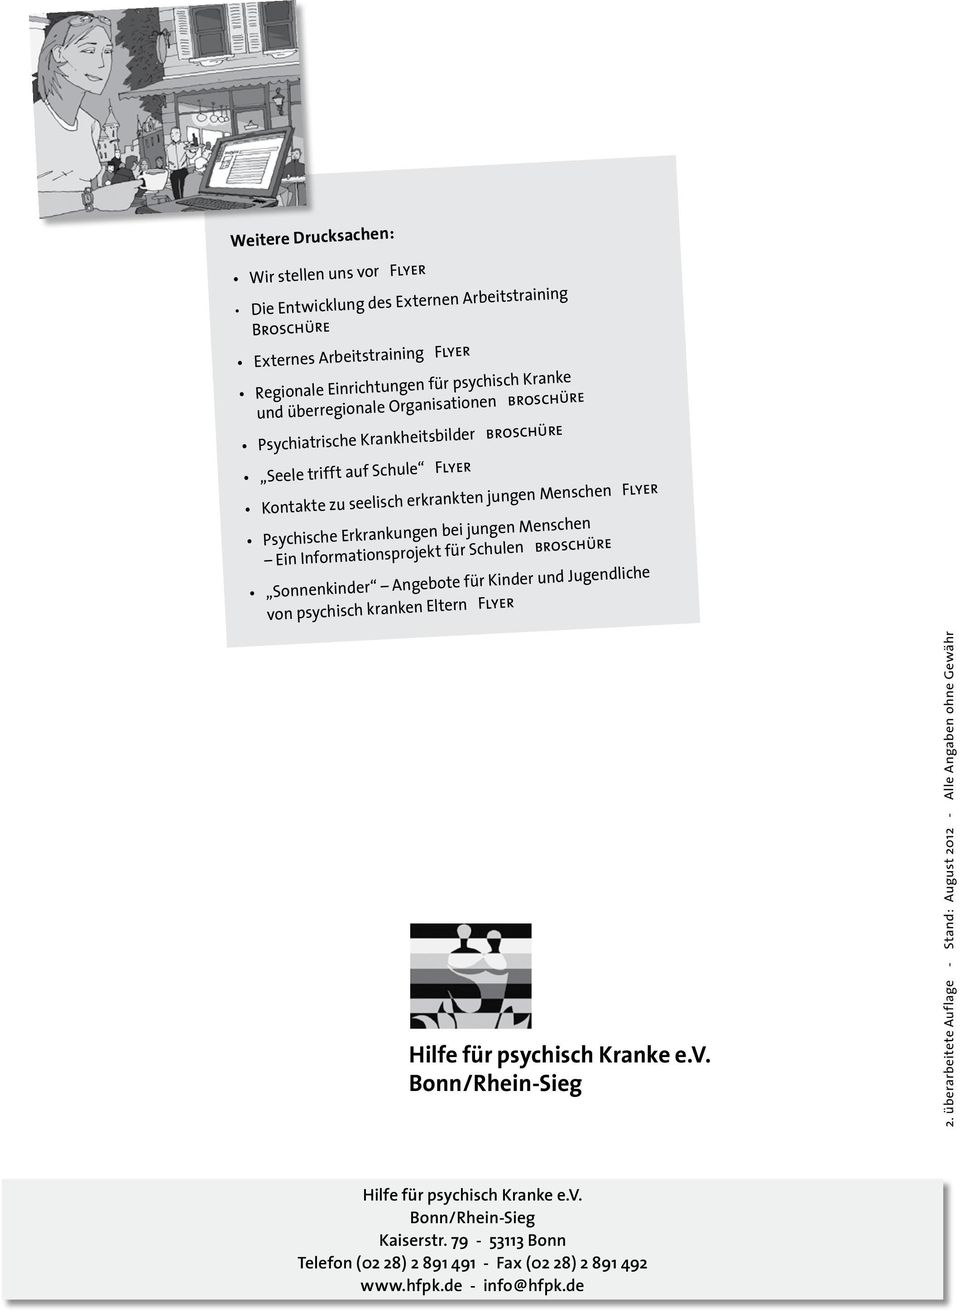 Ein Informationsprojekt für Schulen broschüre Sonnenkinder Angebote für Kinder und Jugendliche von psychisch kranken Eltern Flyer Hilfe für psychisch Kranke e.v. Bonn/Rhein-Sieg 2.